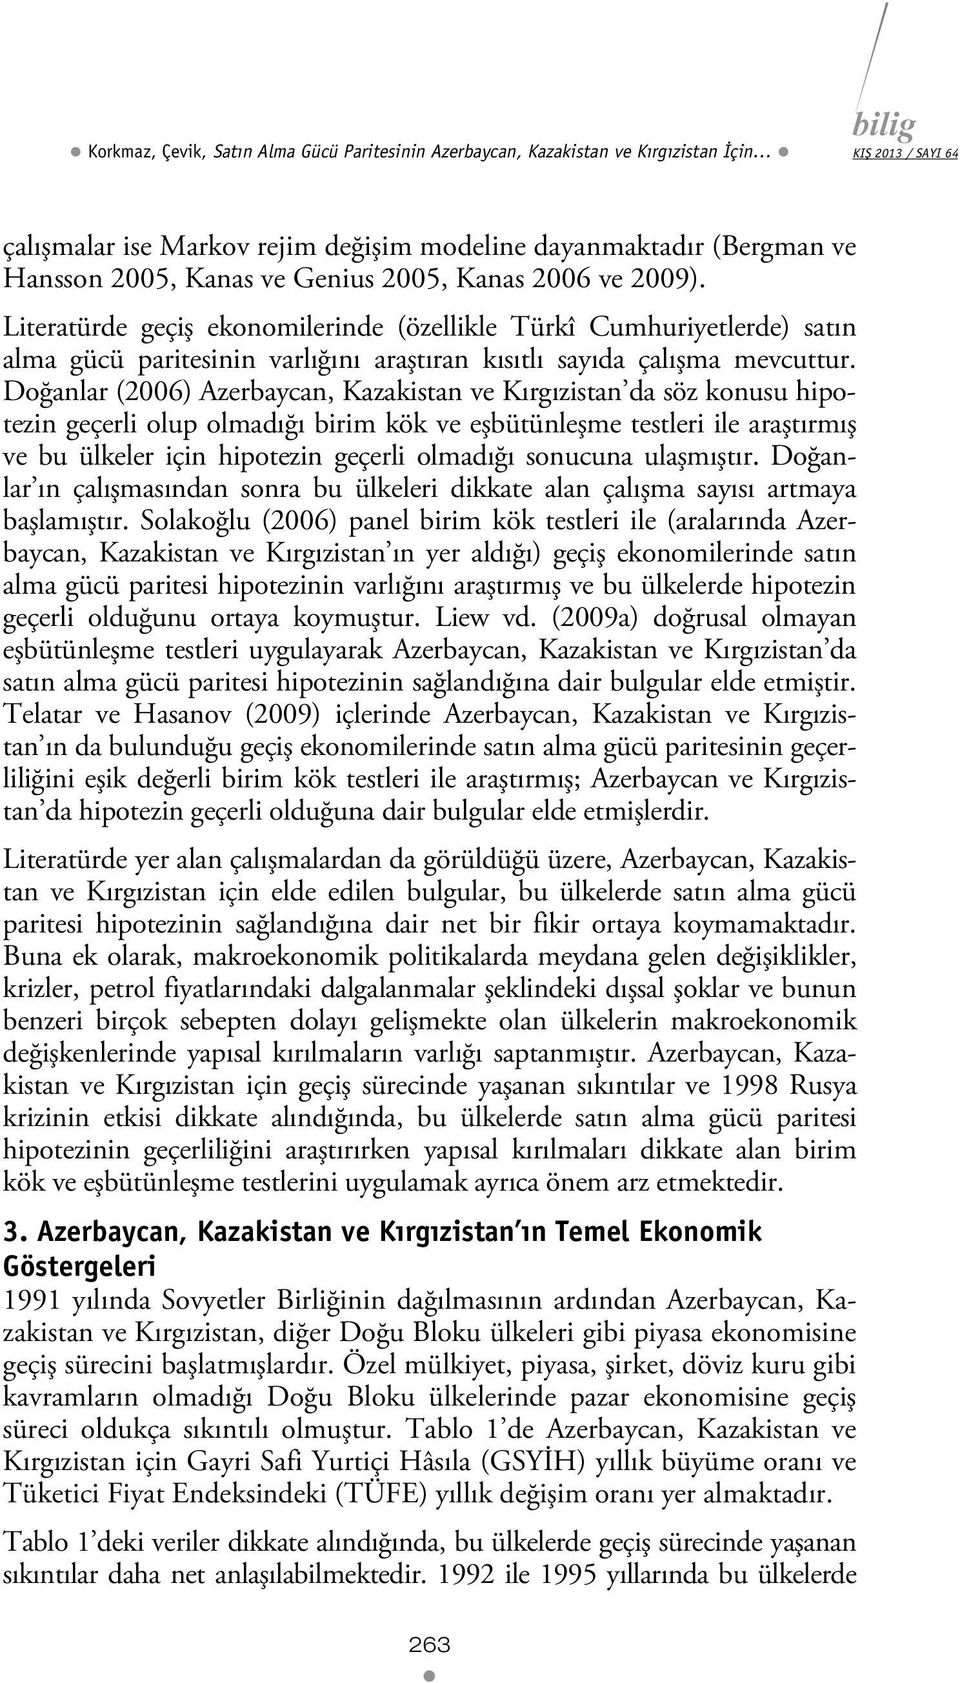 Doğanlar (2006) Azerbaycan, Kazakisan ve Kırgızisan da söz konusu hipoezin geçerli olup olmadığı birim kök ve eşbüünleşme esleri ile araşırmış ve bu ülkeler için hipoezin geçerli olmadığı sonucuna